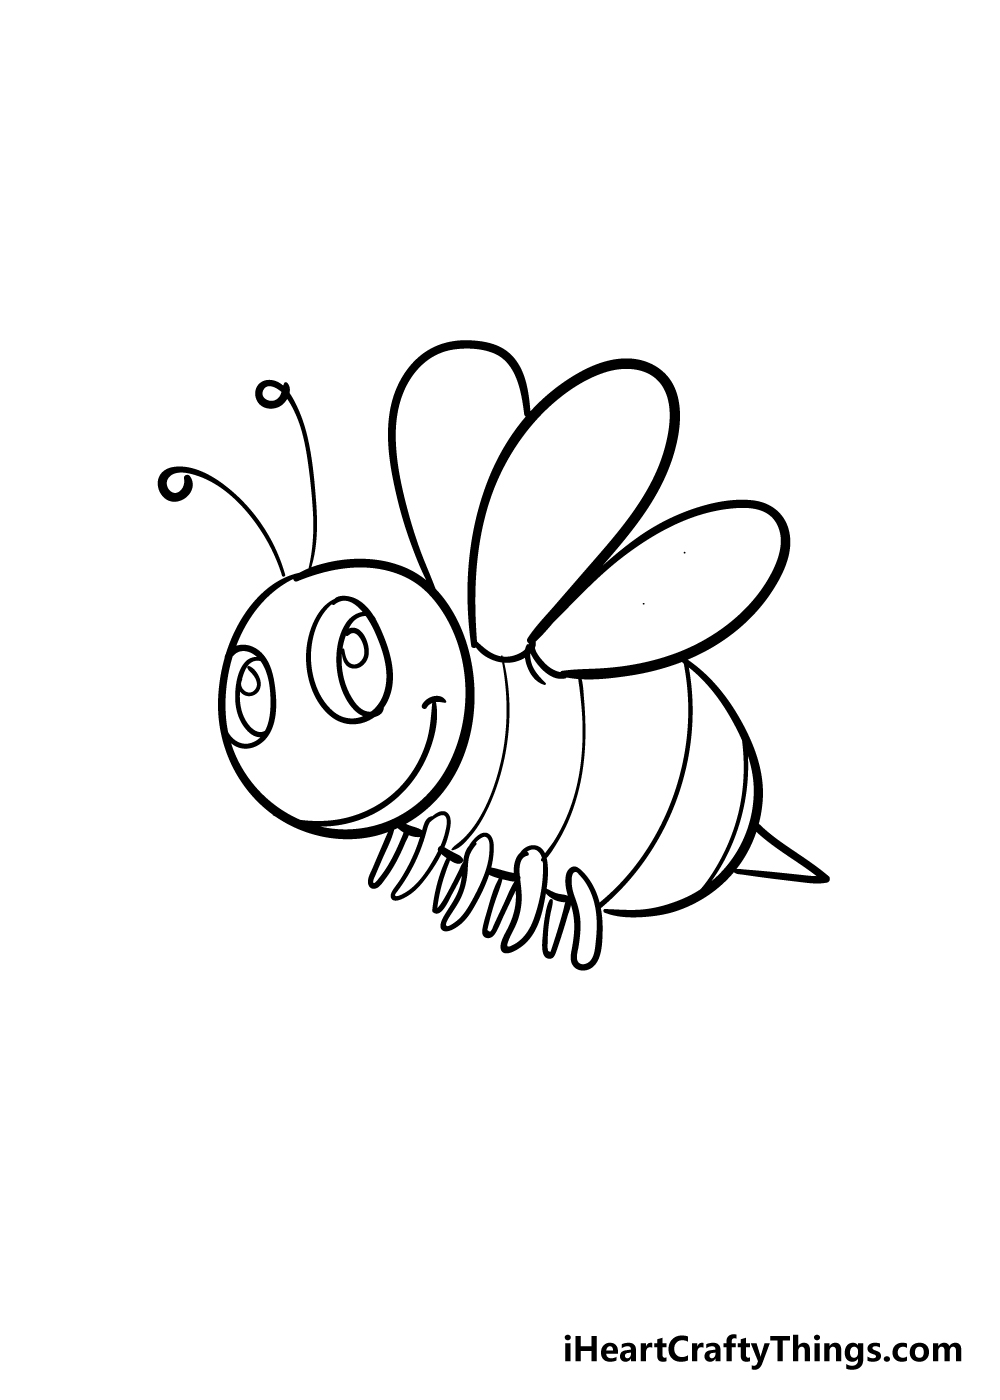 Bee5 - Hướng dẫn chi tiết cách vẽ con ong đơn giản với 7 bước cơ bản